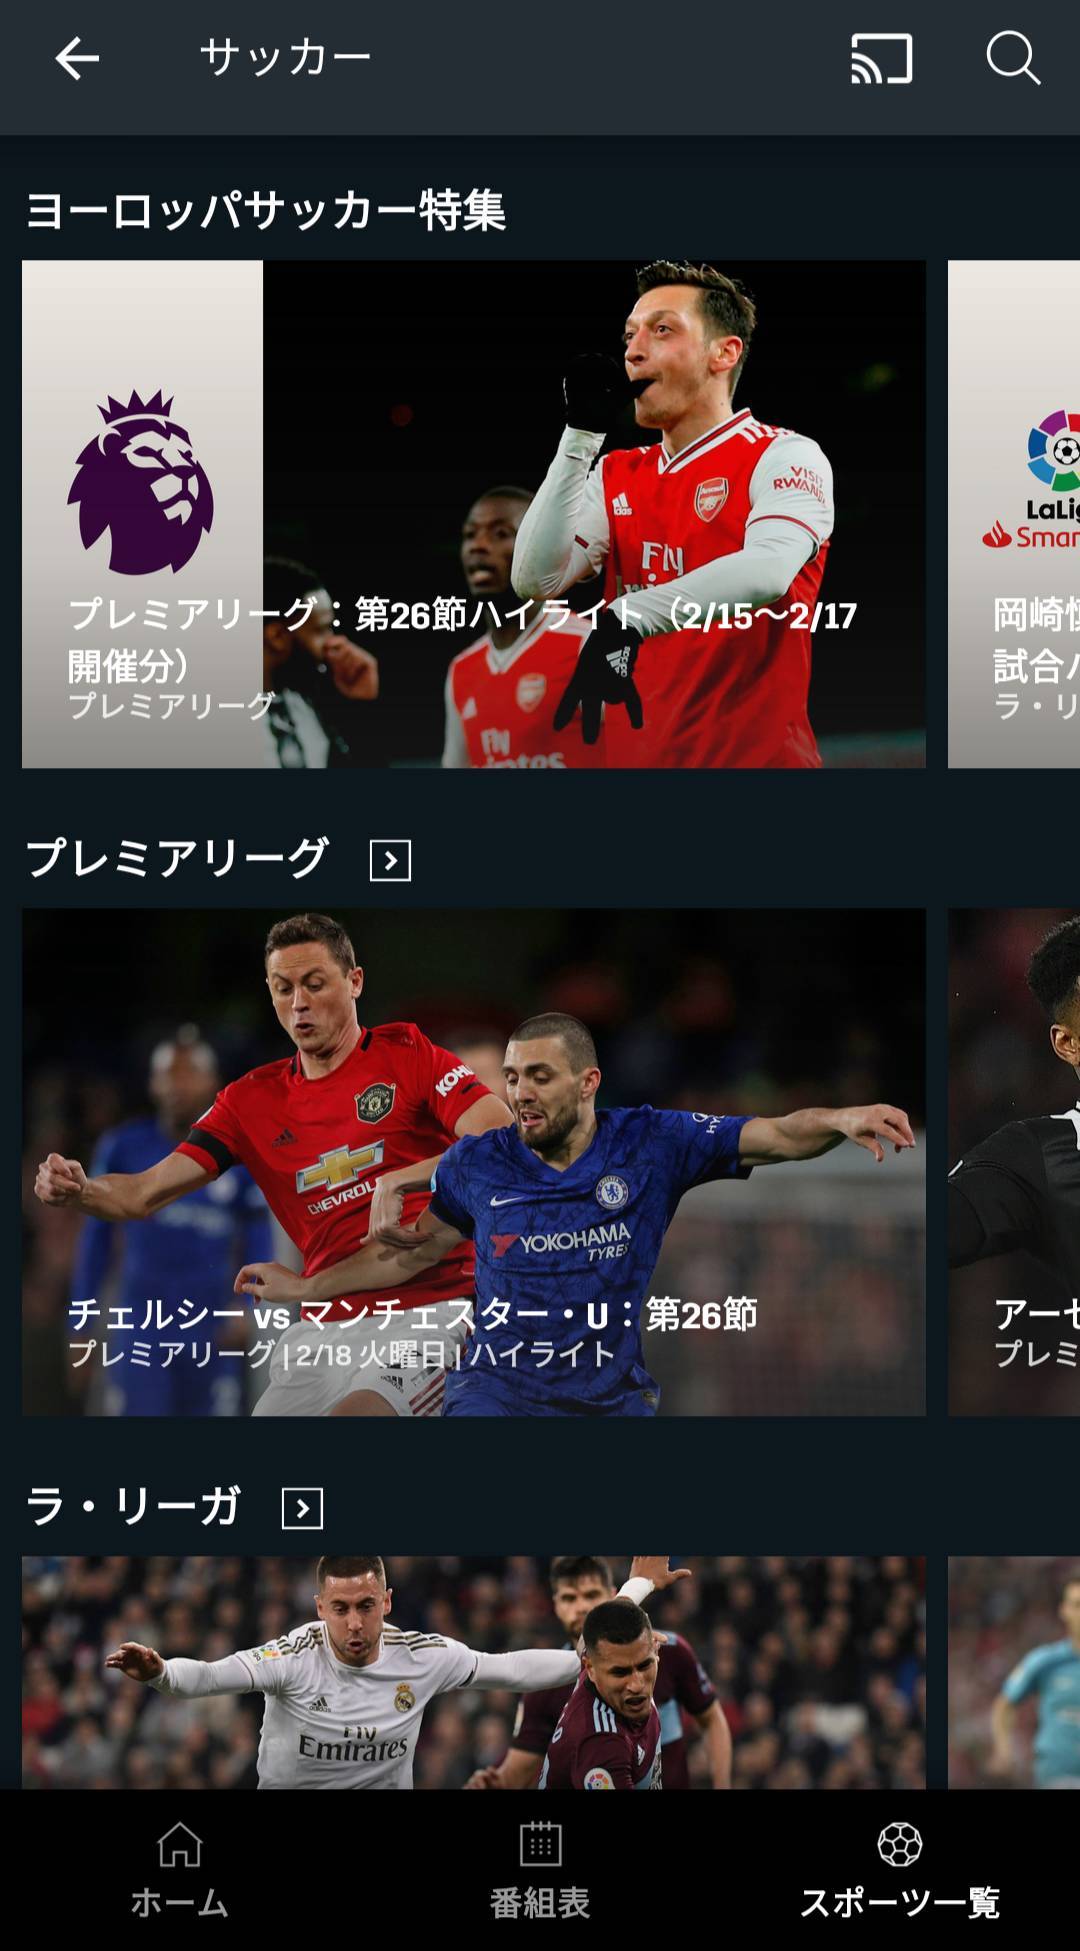 国内サッカー Jリーグのネット中継をスマホで観る方法6つ 無料あり の画像 3枚目 Appliv Topics